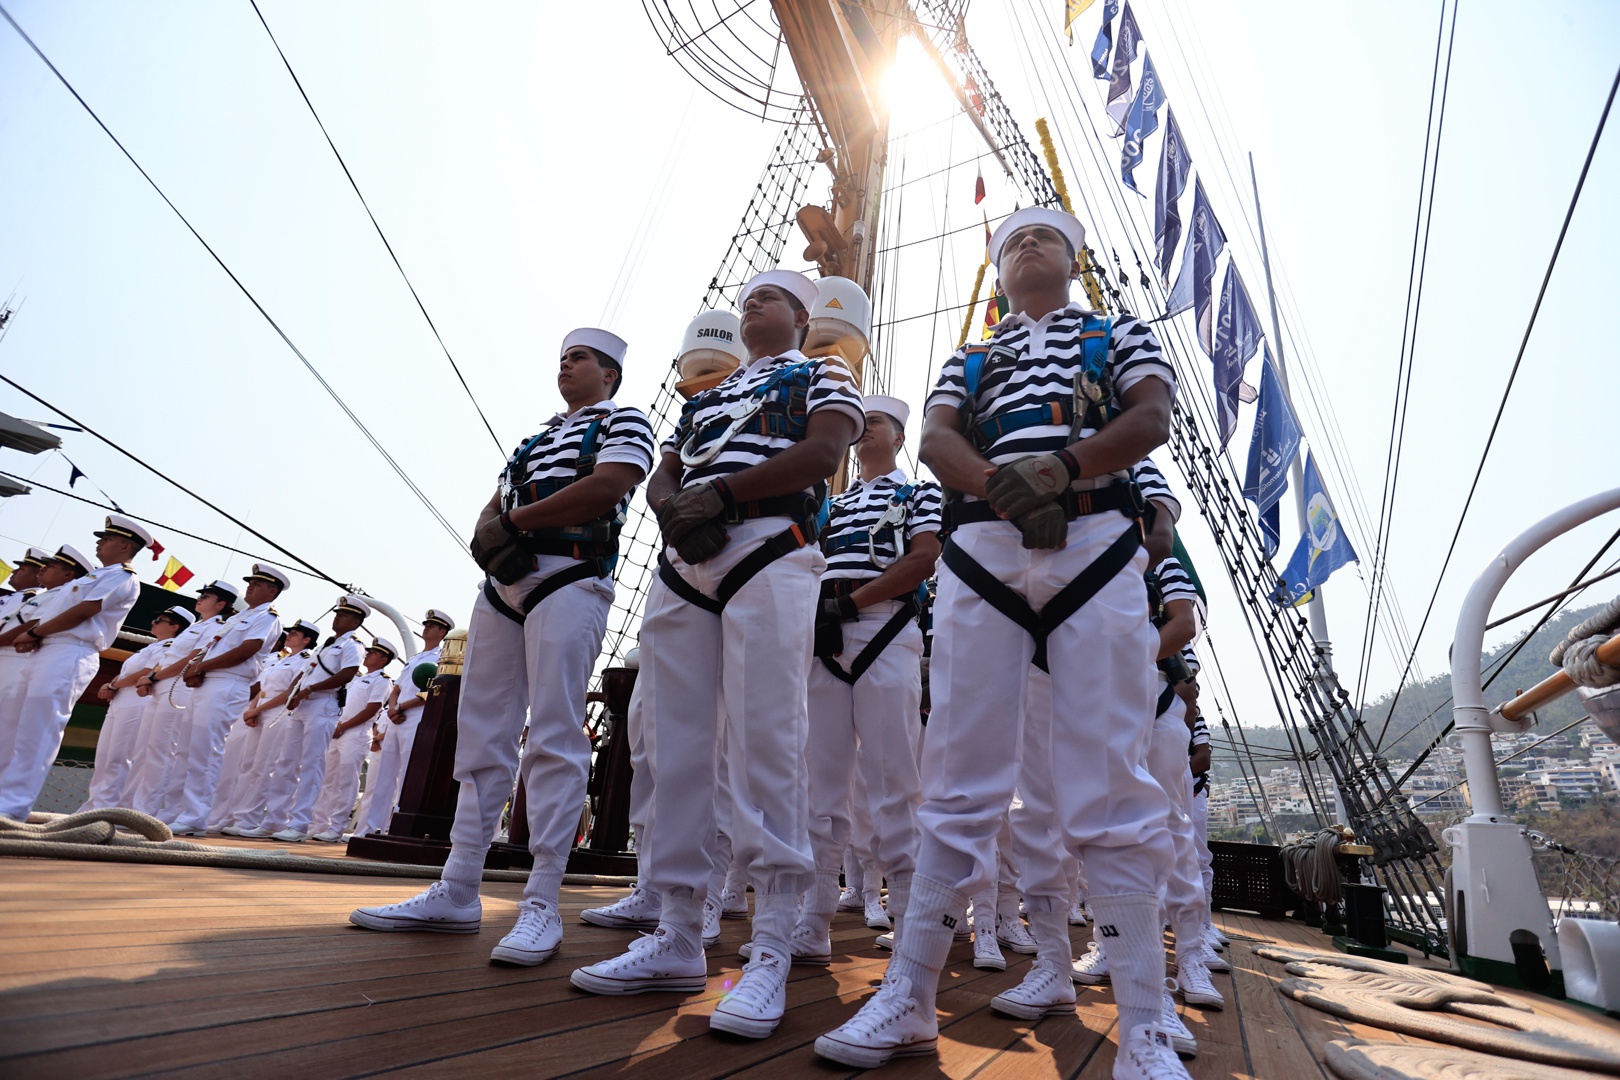 buque escuela de la armada mexicana zarpa a 10 países con récord de tripulación femenina